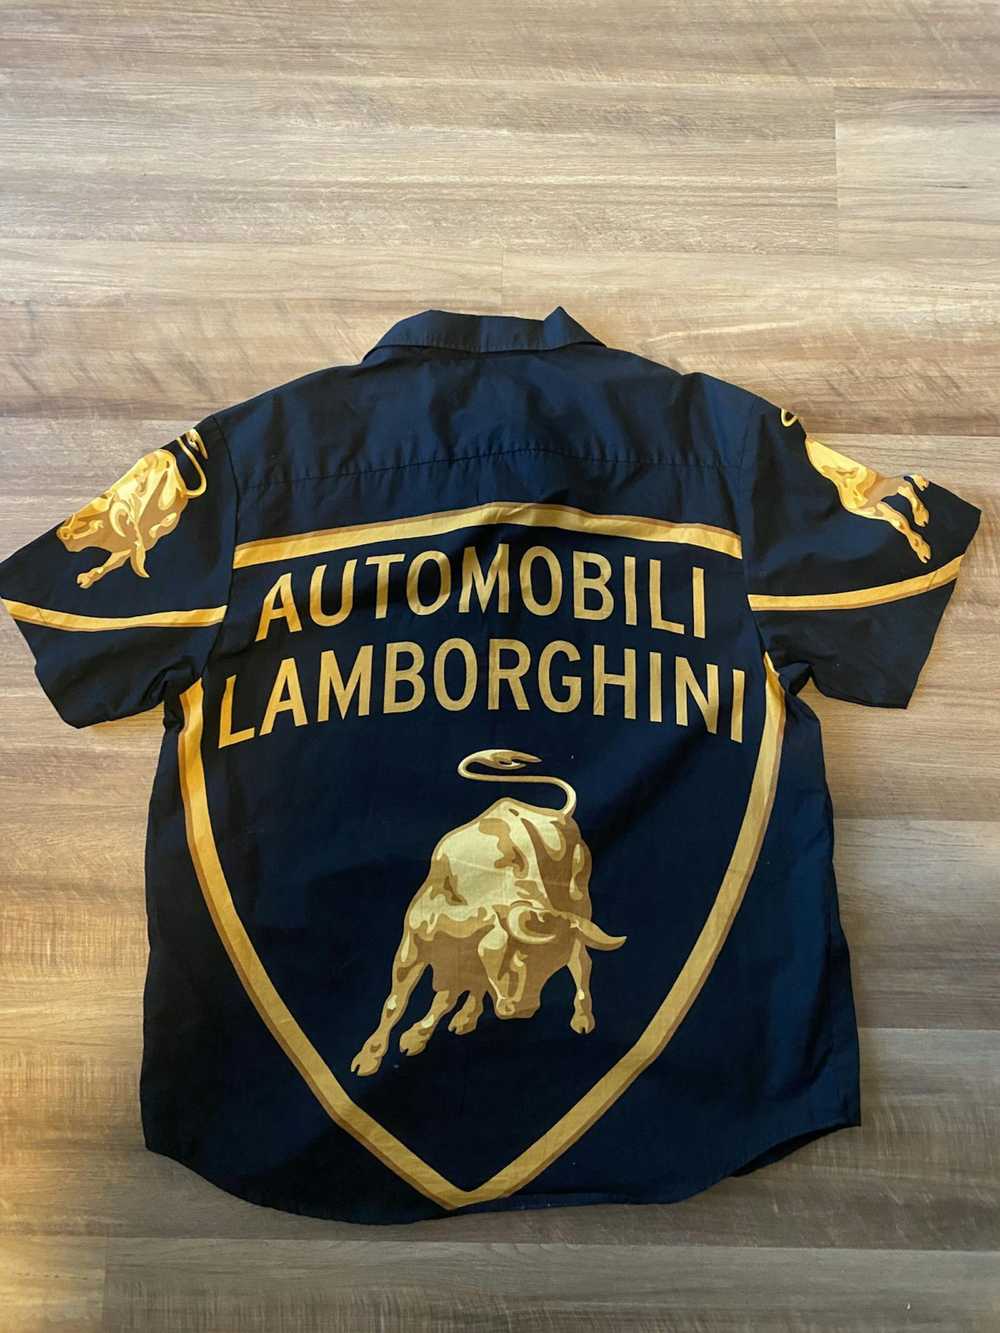 Supreme Supreme Lamborghini Shirt Size Large - image 3